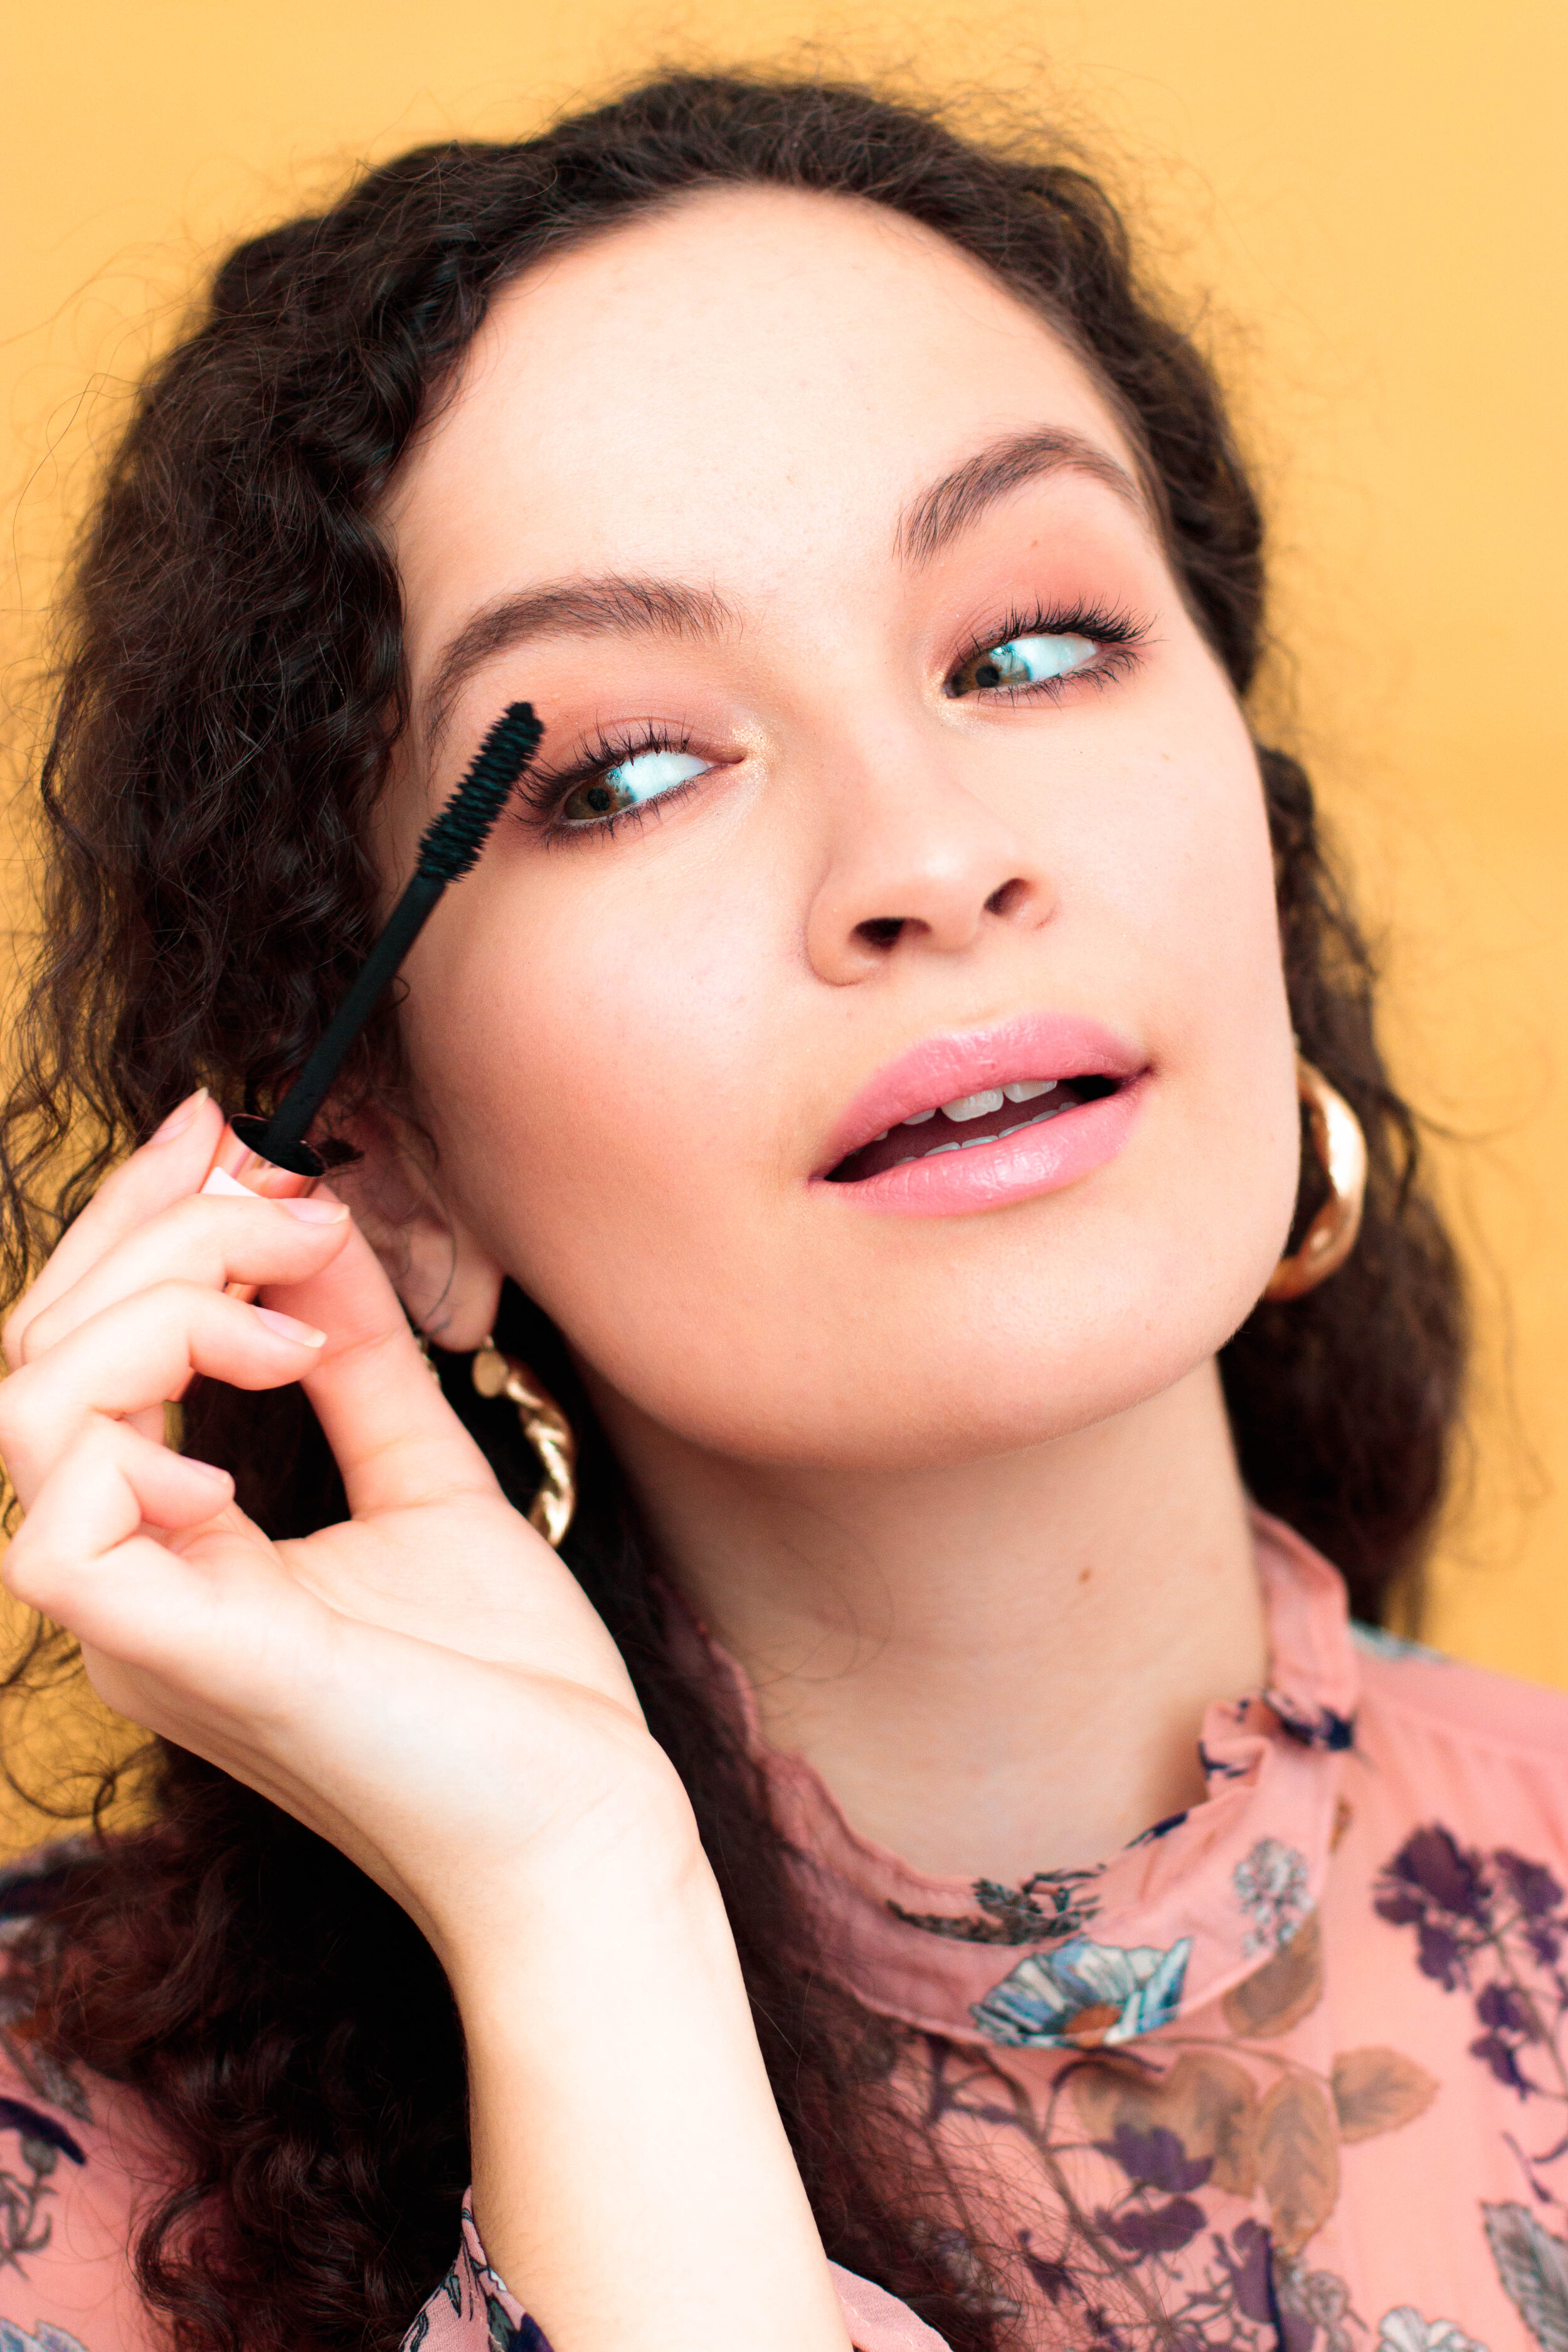 Les 10 Produits Maquillage Indispensables A Avoir Dans Sa Trousse Beaute Pour Bien Debuter Pauuulette Blog Makeup